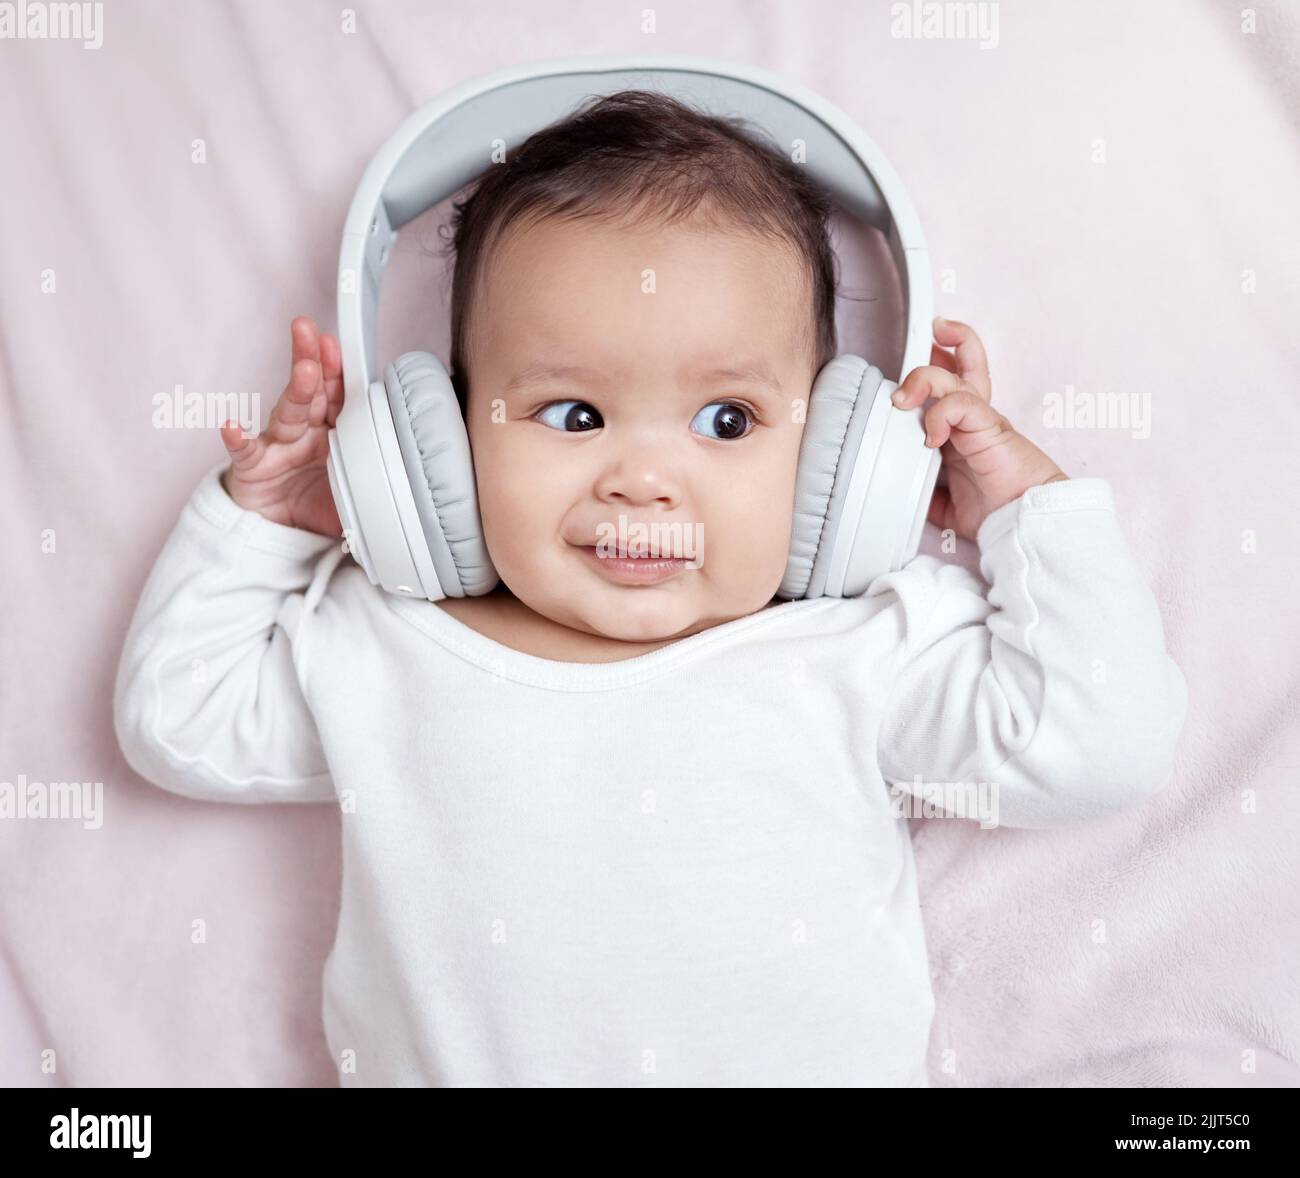 Auriculares antiruido para bebé, ¿son perjudiciales?